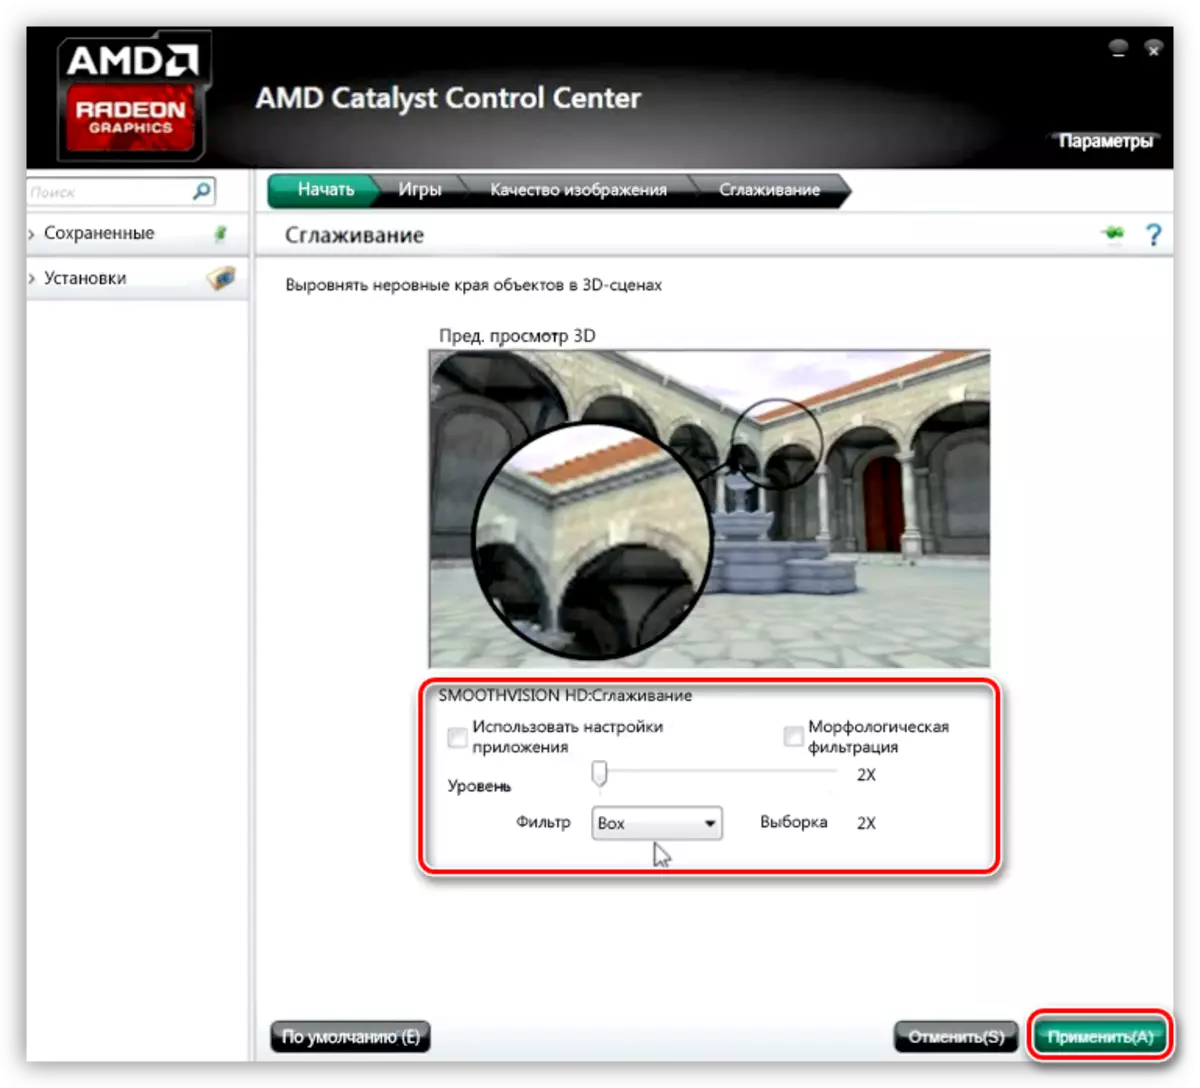 Leuntzeko parametroak AMD bideo-txartelaren konfigurazio programan ezarriz